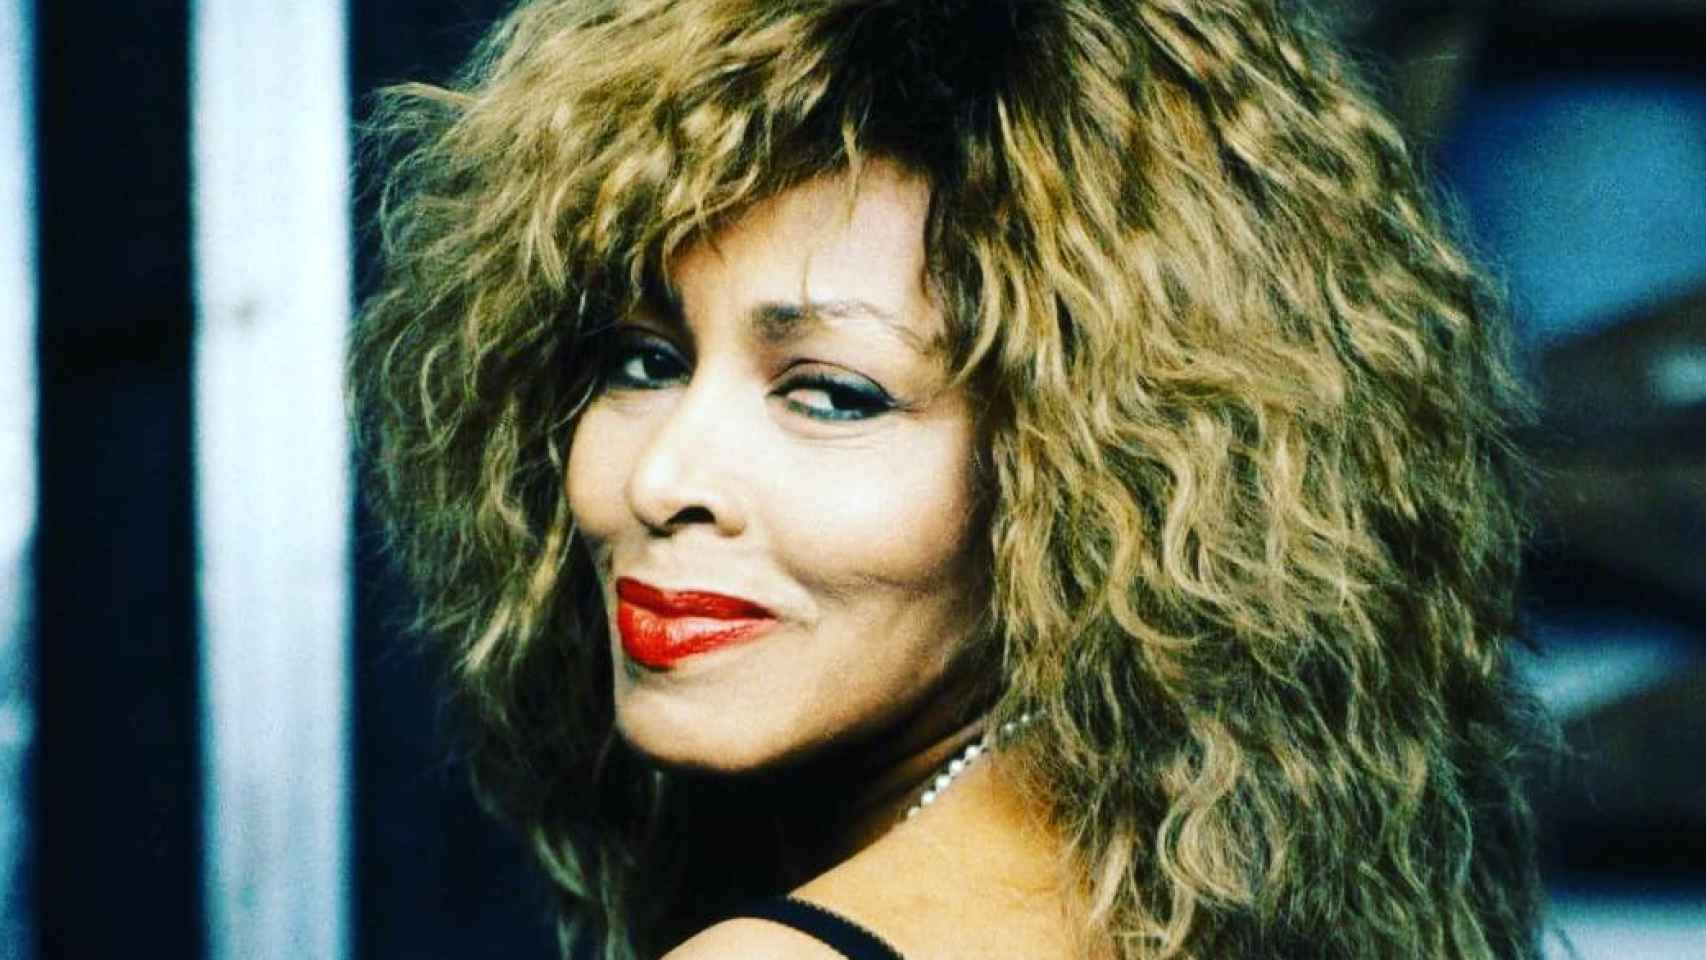 La afamada intérprete Tina Turner en una fotografía de archivo publicada en sus redes sociales.